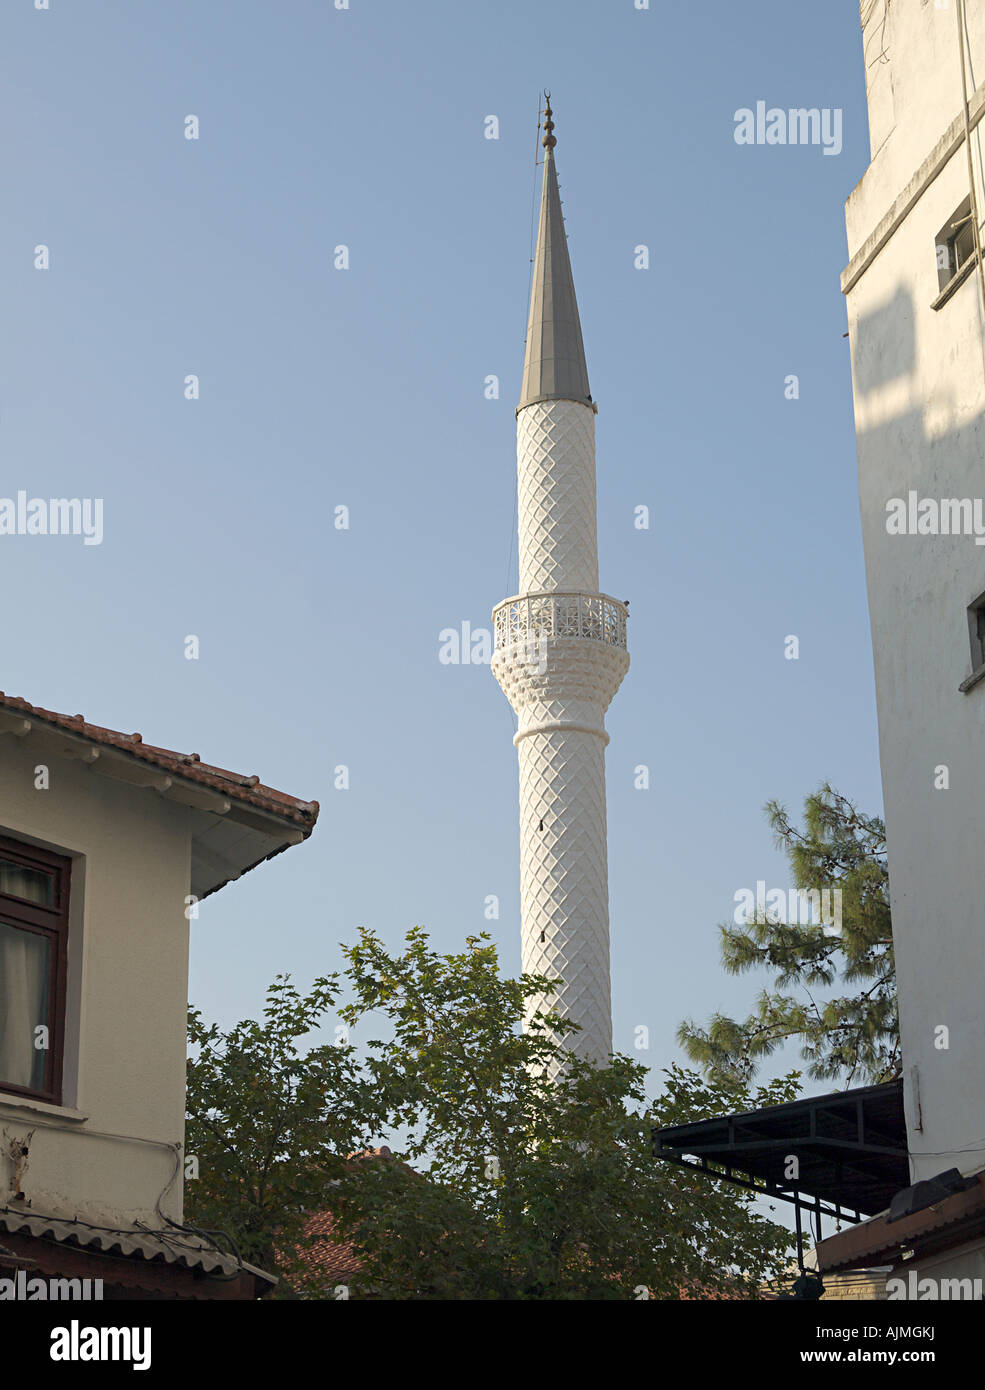 WHITE MINARET TO MOSQUE OLD TOWN MARMARIS TURKEY Stock Photo